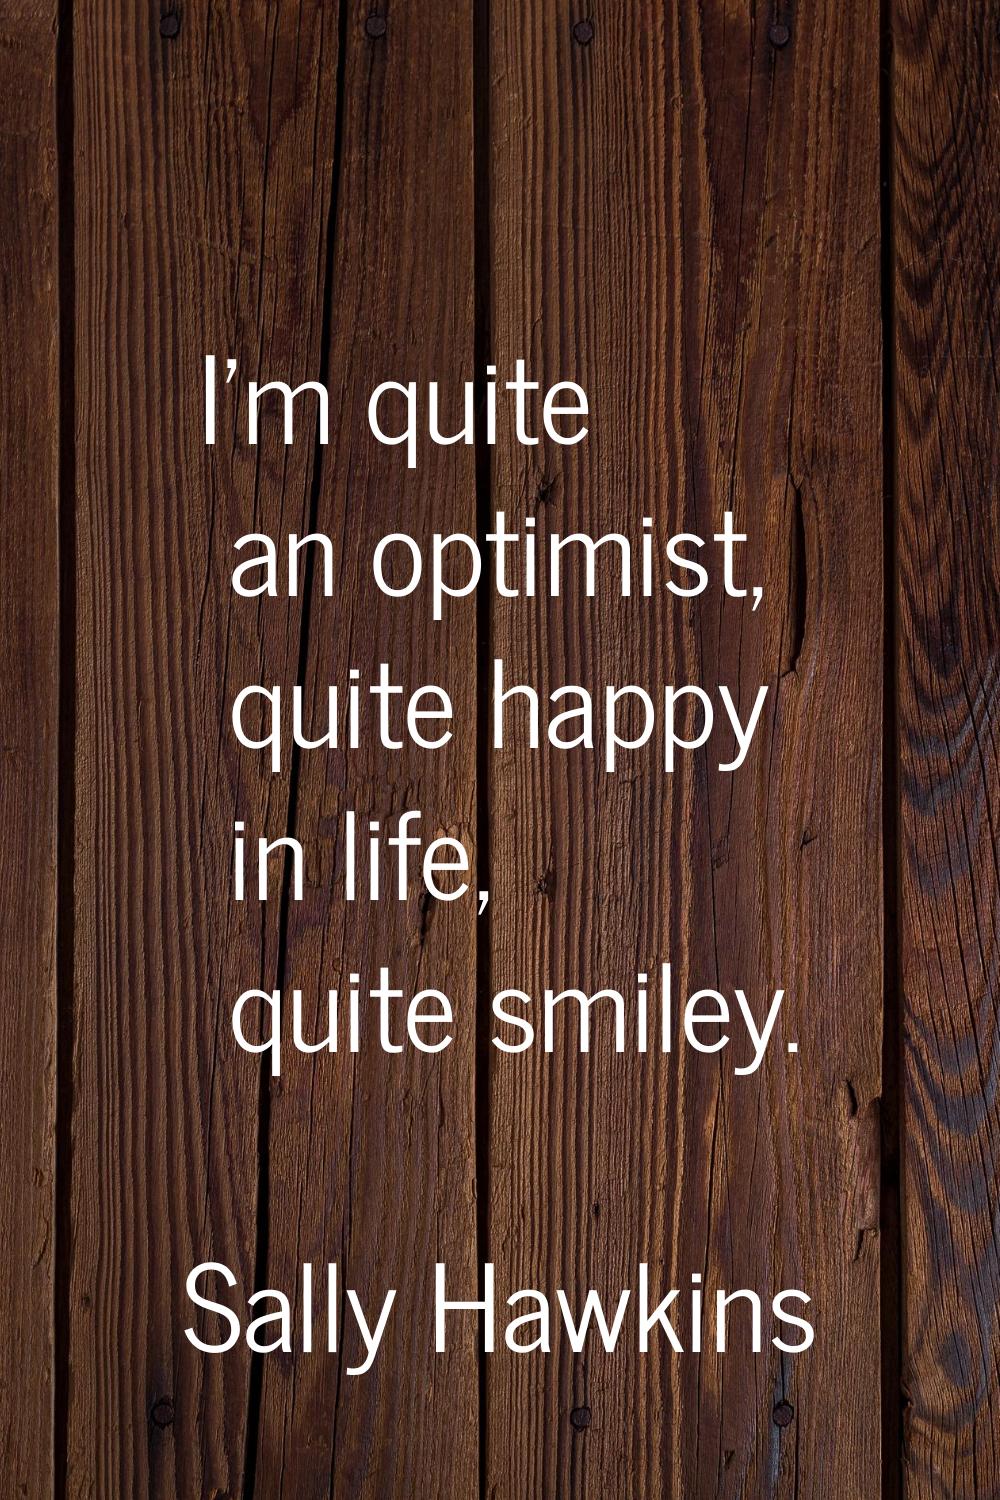 I'm quite an optimist, quite happy in life, quite smiley.